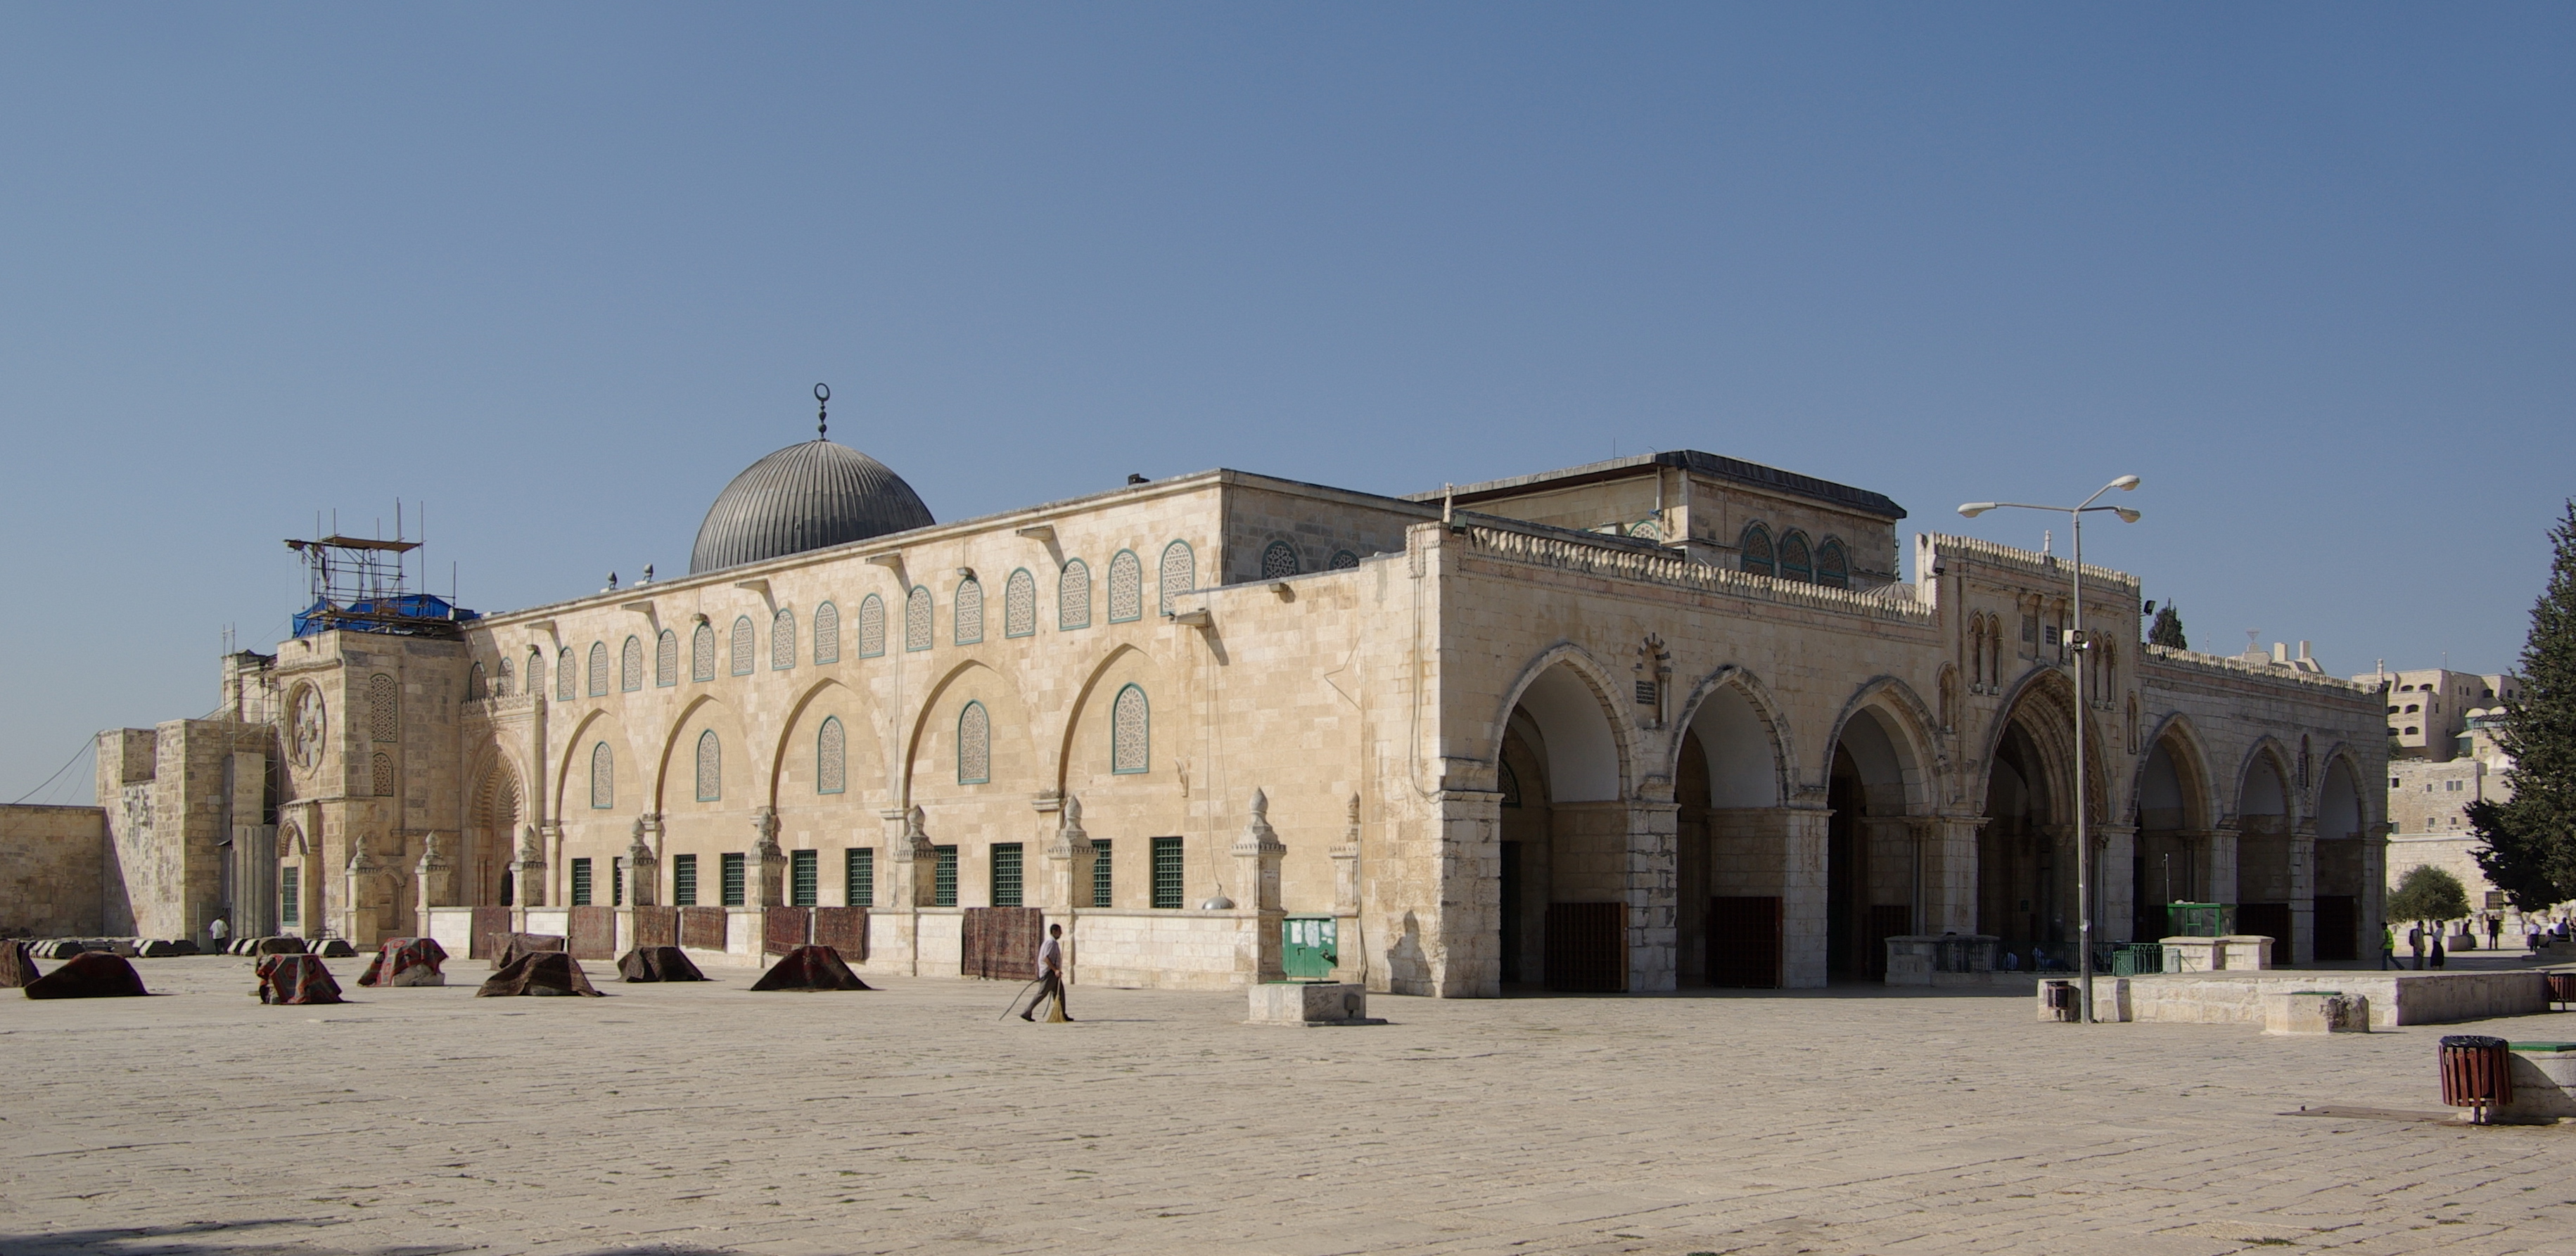 Jerusalem_Al-Aqsa_Mosque_BW_2010-09-21_06-38-12.JPG